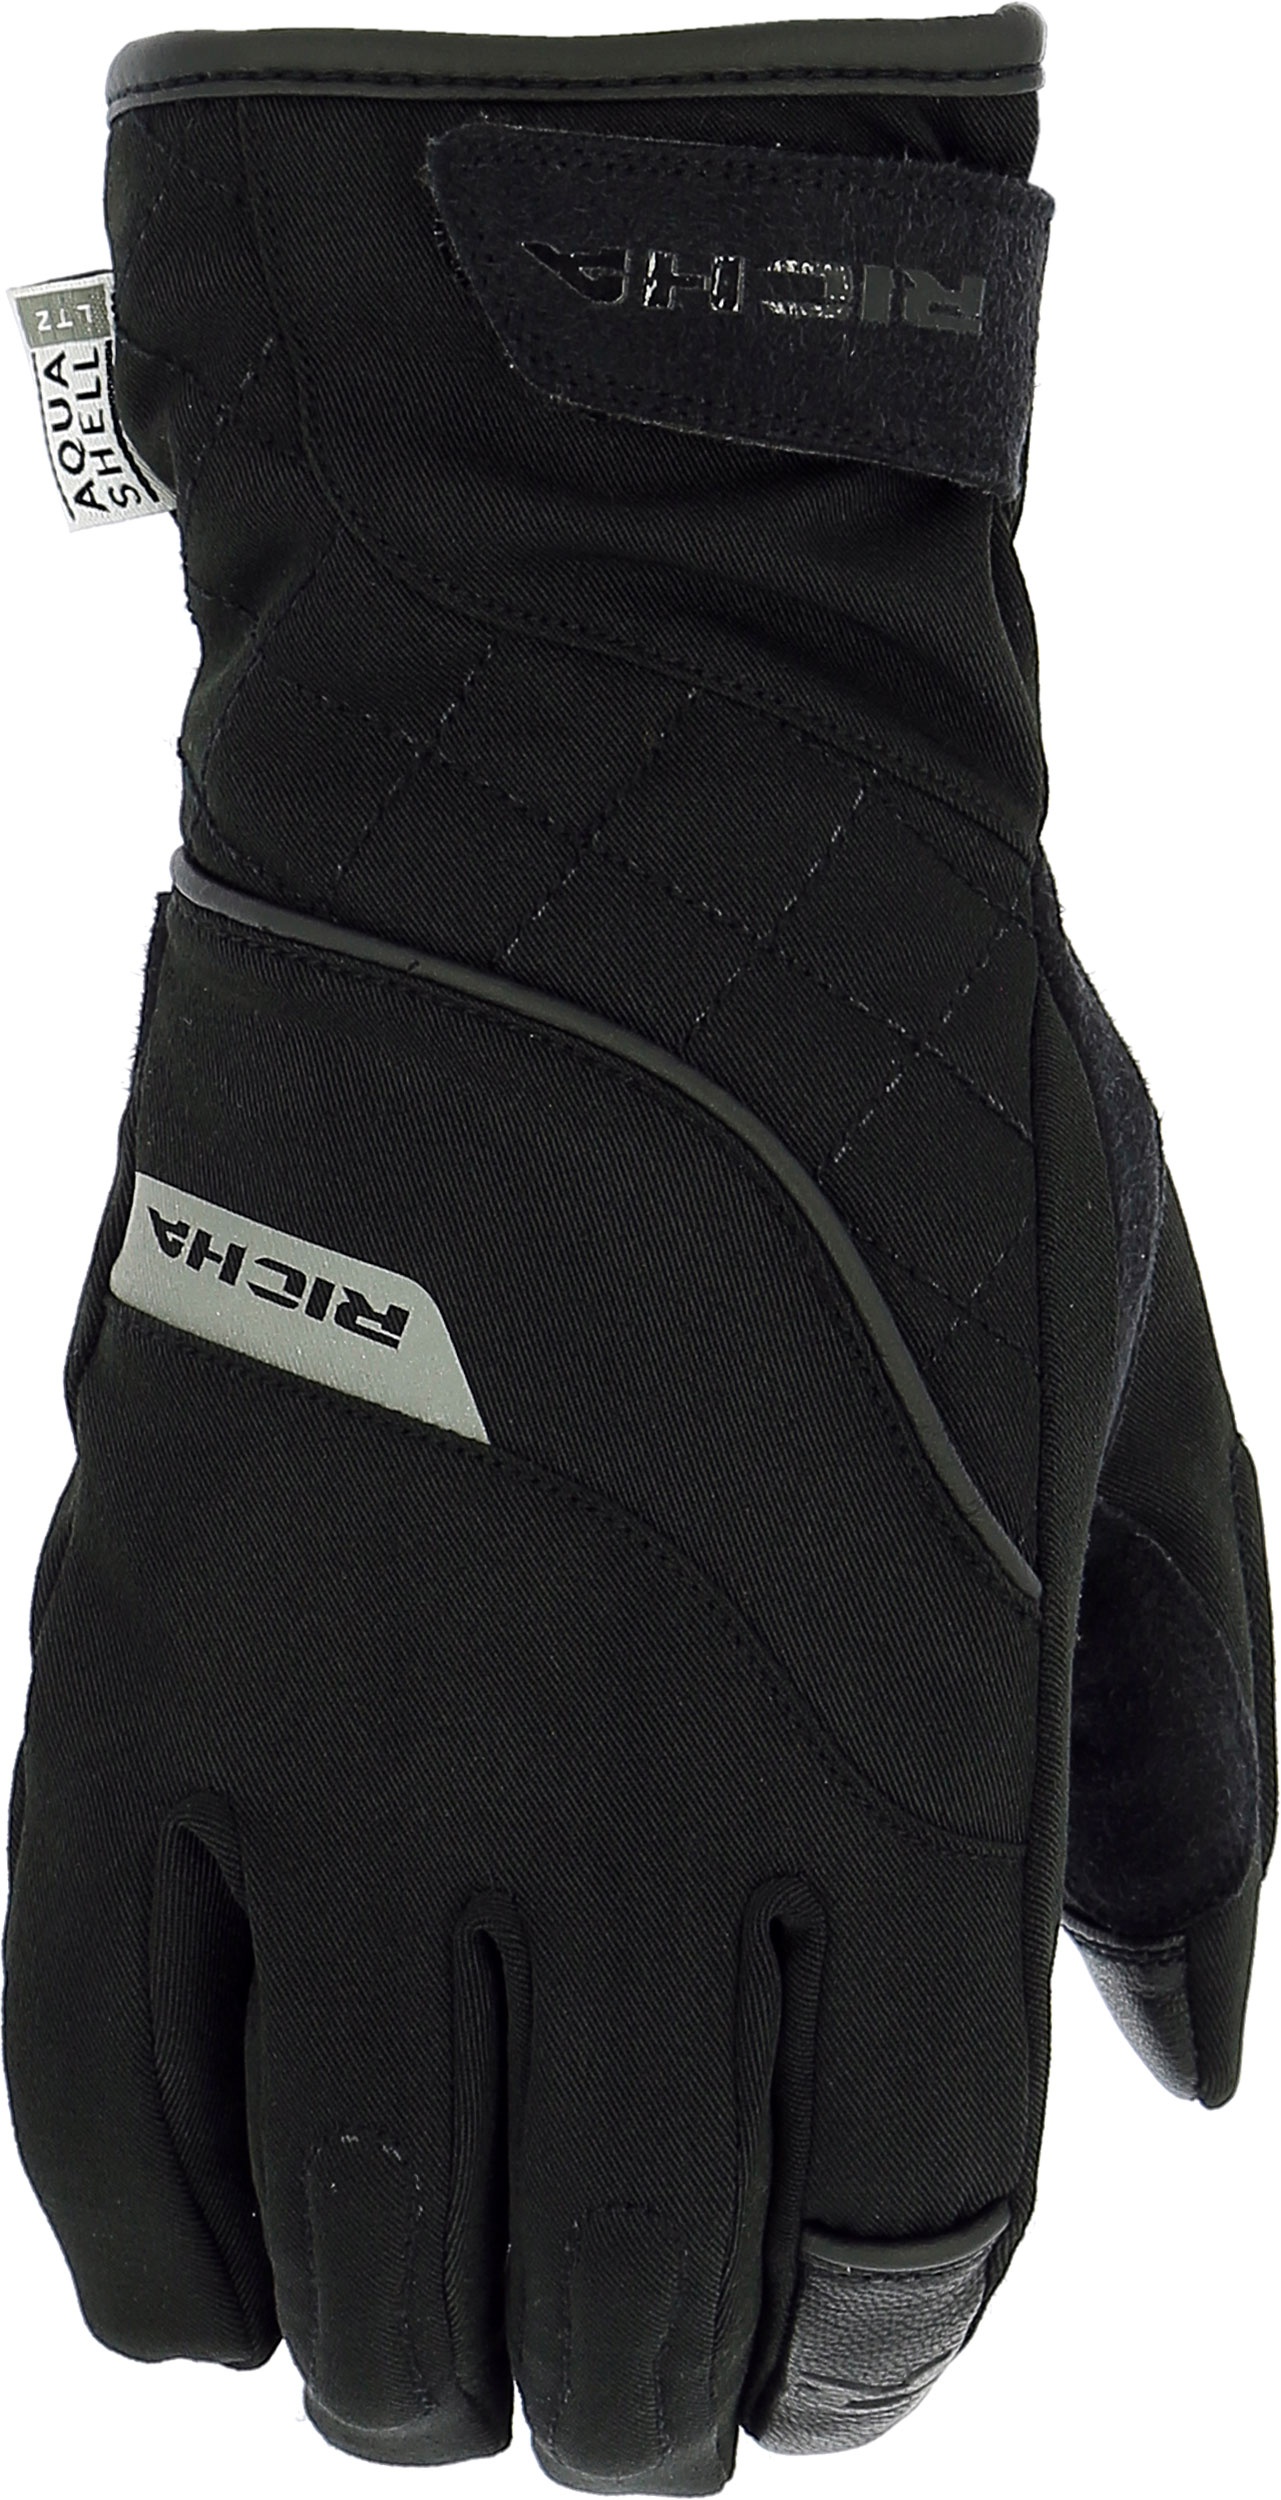 Richa Tina 2, gants imperméables femmes - Noir - XS